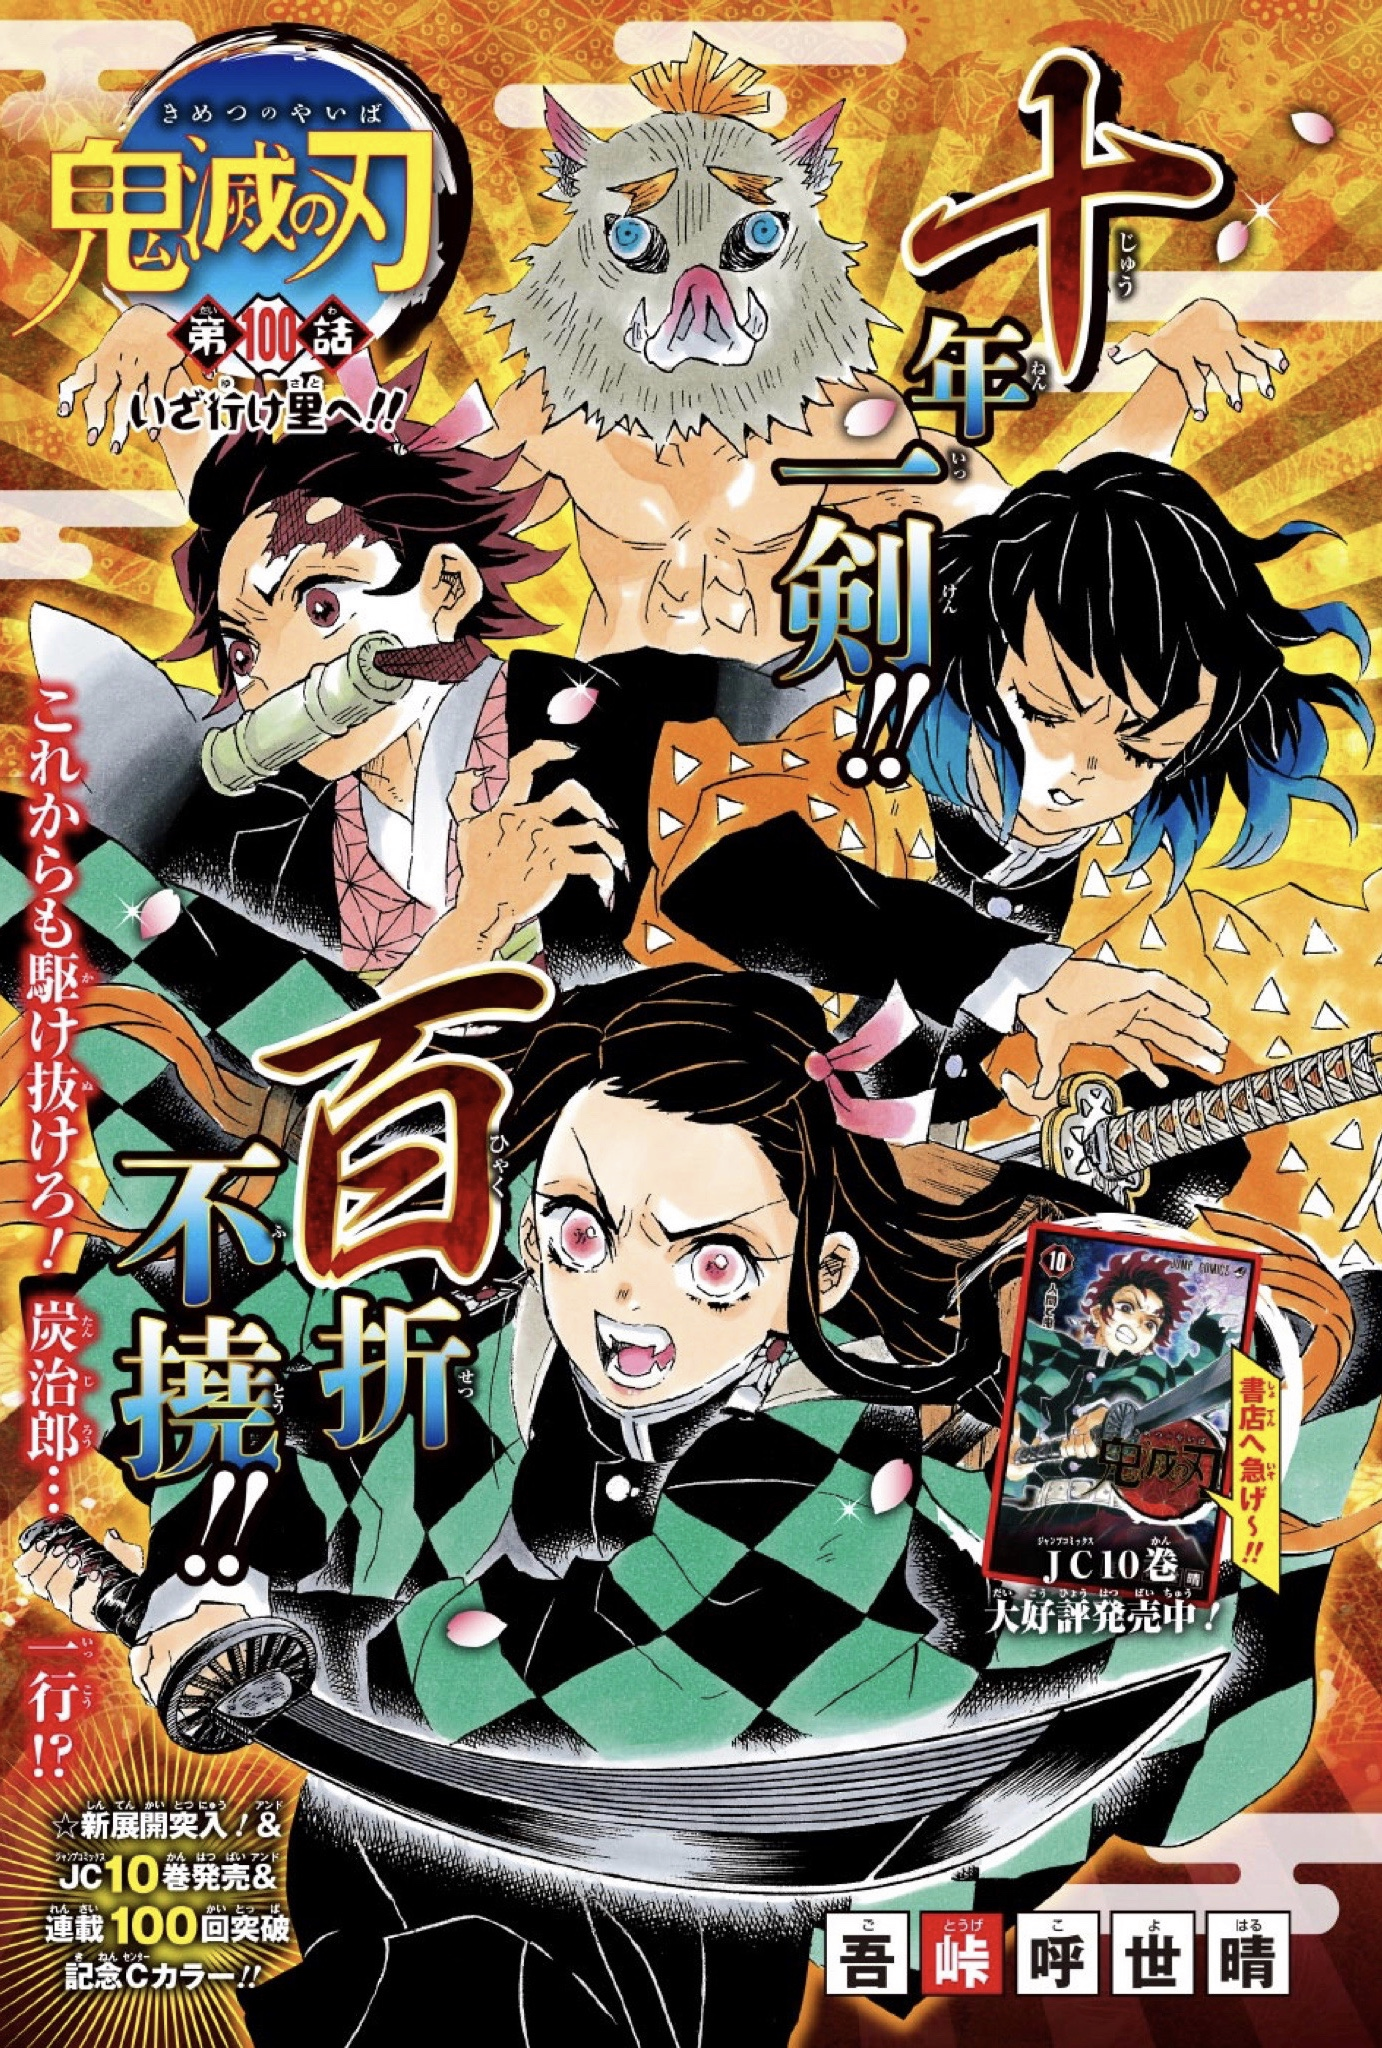 Demon Slayer Kimetsu No Yaiba Vol 1 To 22 Rengoku Zero Manga Book 23 Set Anime Comics Collectibles